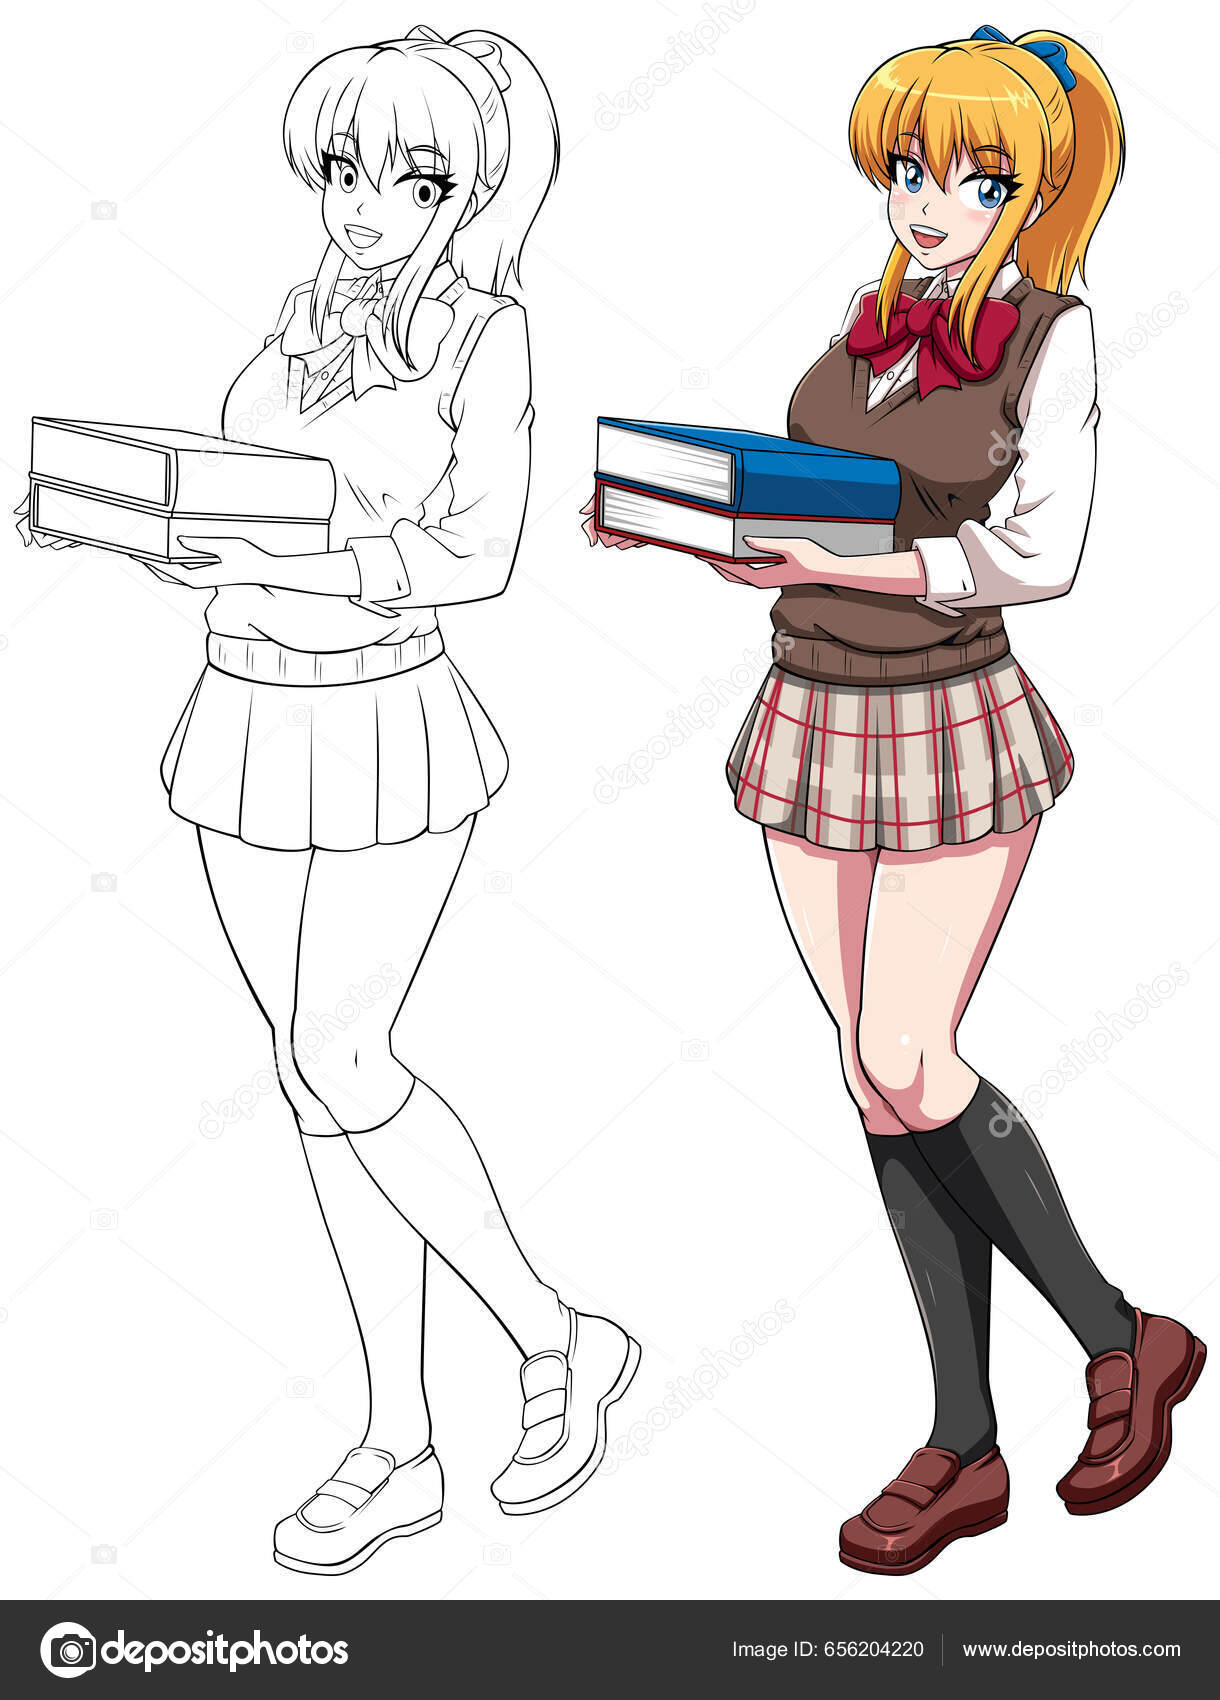 Anime mangá com uniforme escolar em várias poses